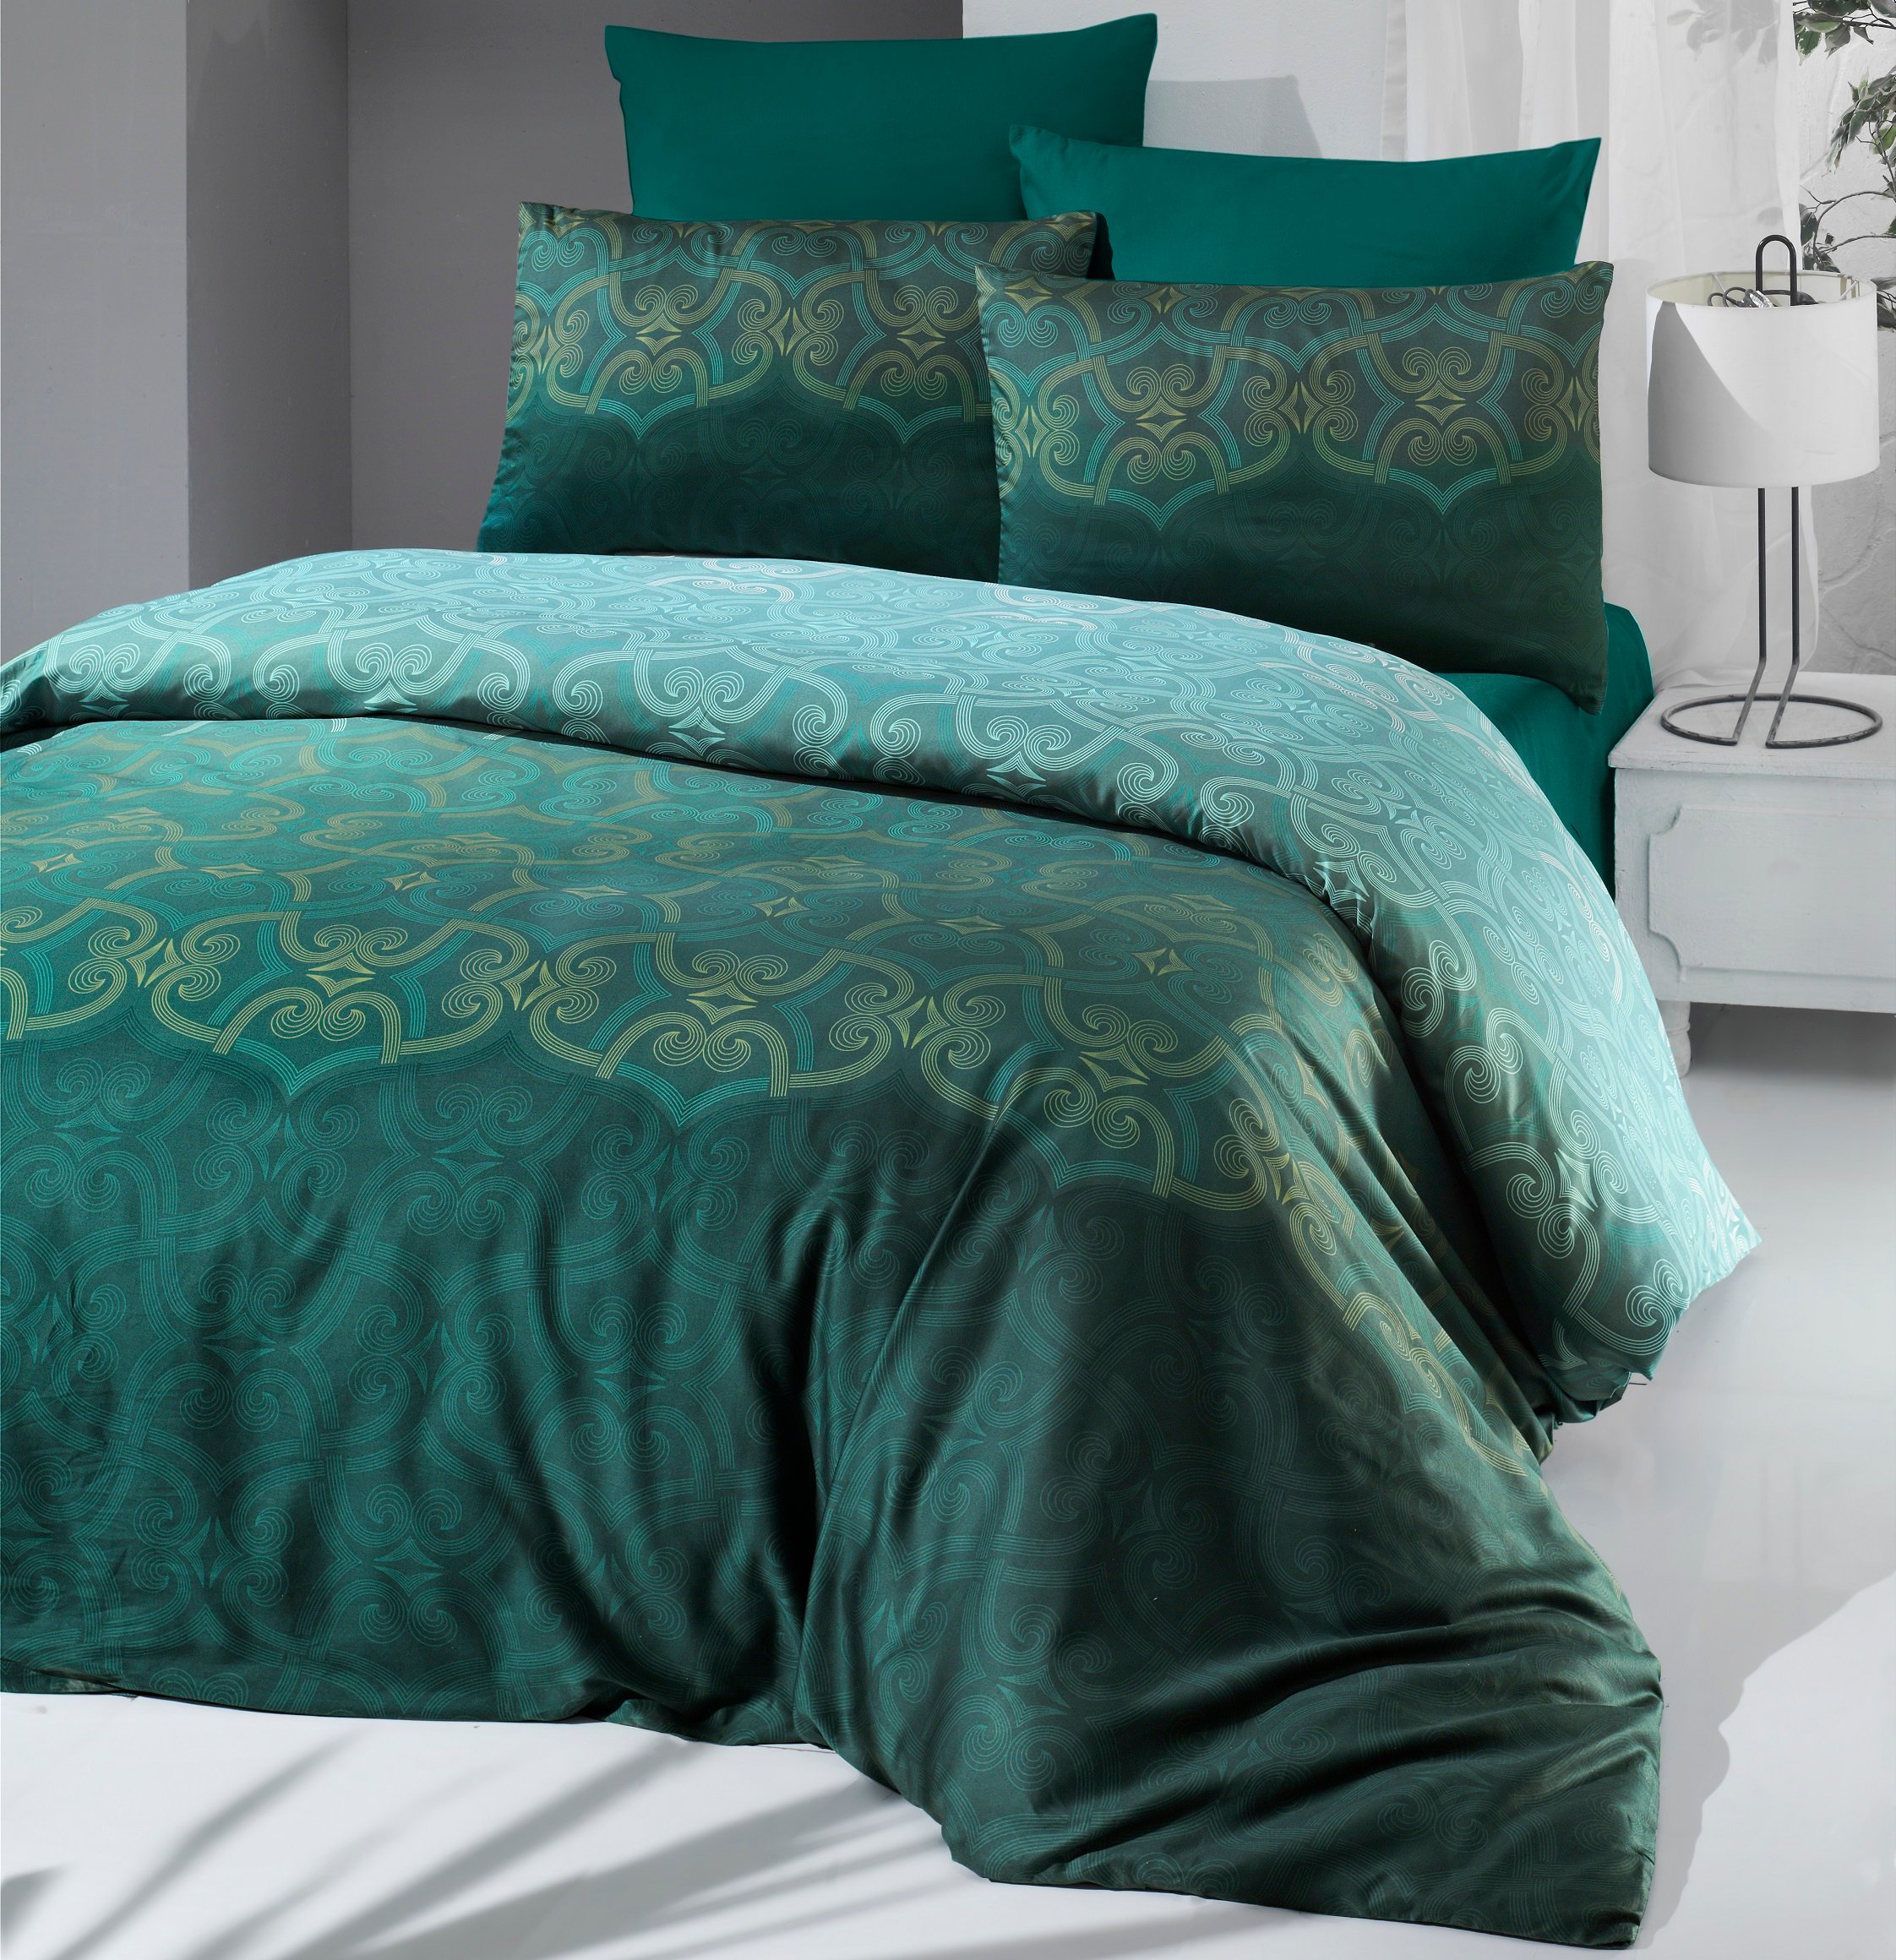 Комплект постельного белья Victoria Sateen Pandora Green, сатин, евростандарт, 220х200 см, зеленый (2200000551733) - фото 1